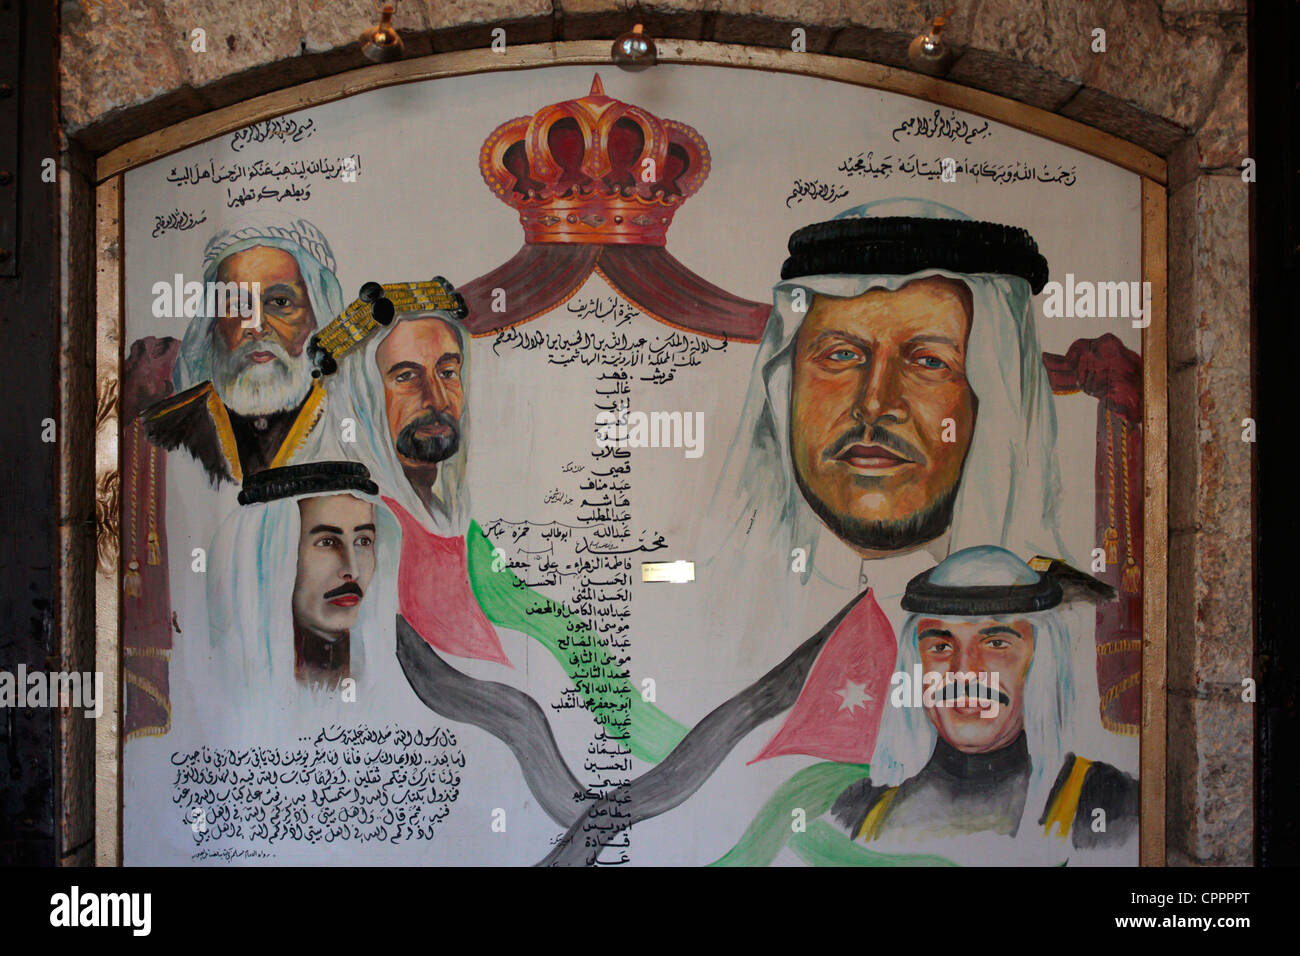 Panneau illustré de la famille royale des Hashemites Jordan Amman Jordanie Banque D'Images